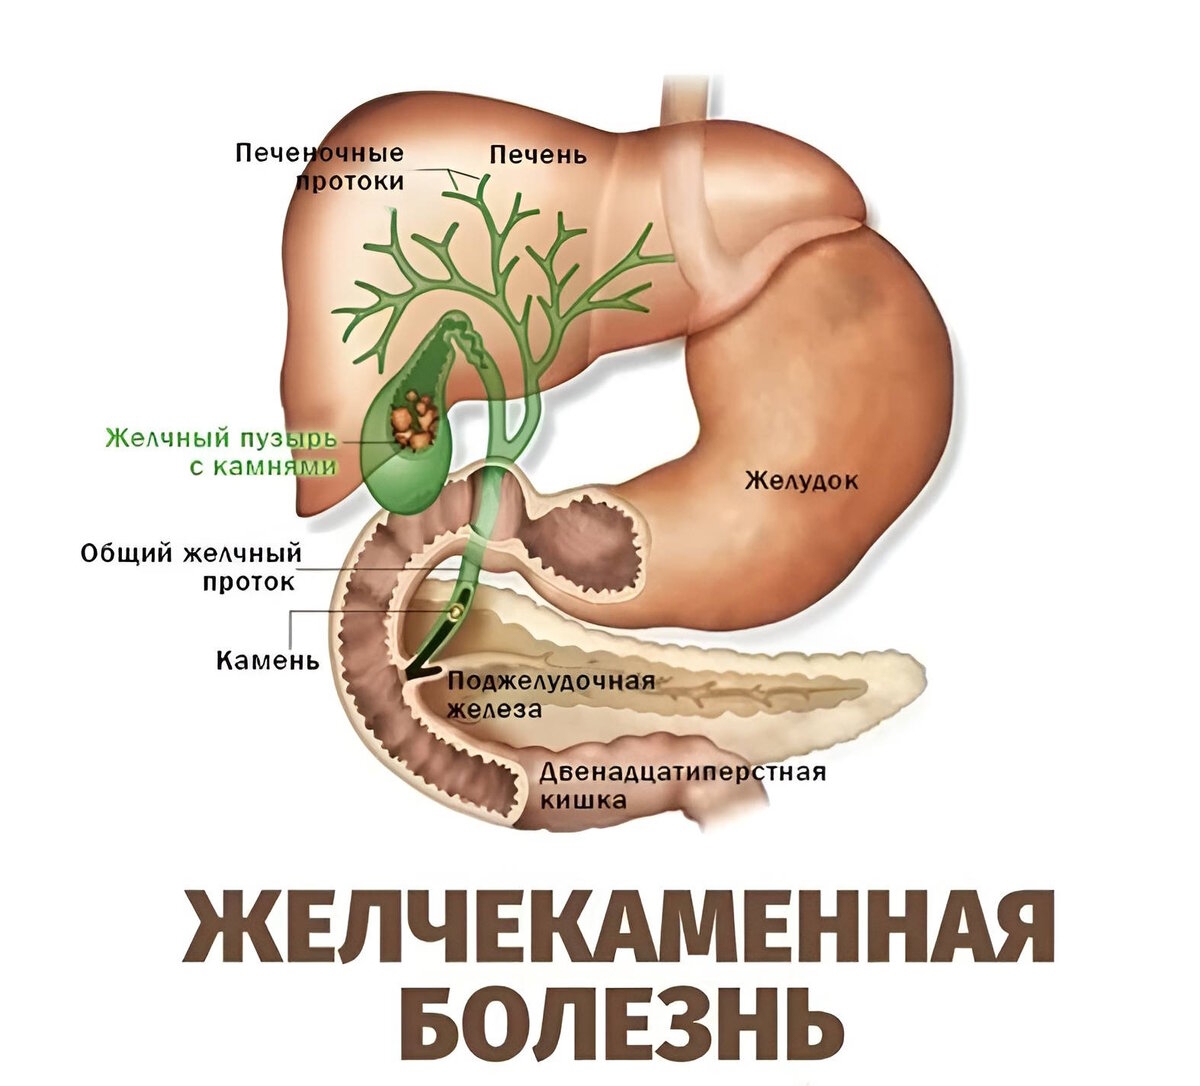 Анатомия ЖКТ желчный пузырь. Желчный пузырь и желчные протоки анатомия. Камни поджелудочной железы ЖКБ. Желчекаменная болезнь анатомия. Симптомы желчного пузыря форум